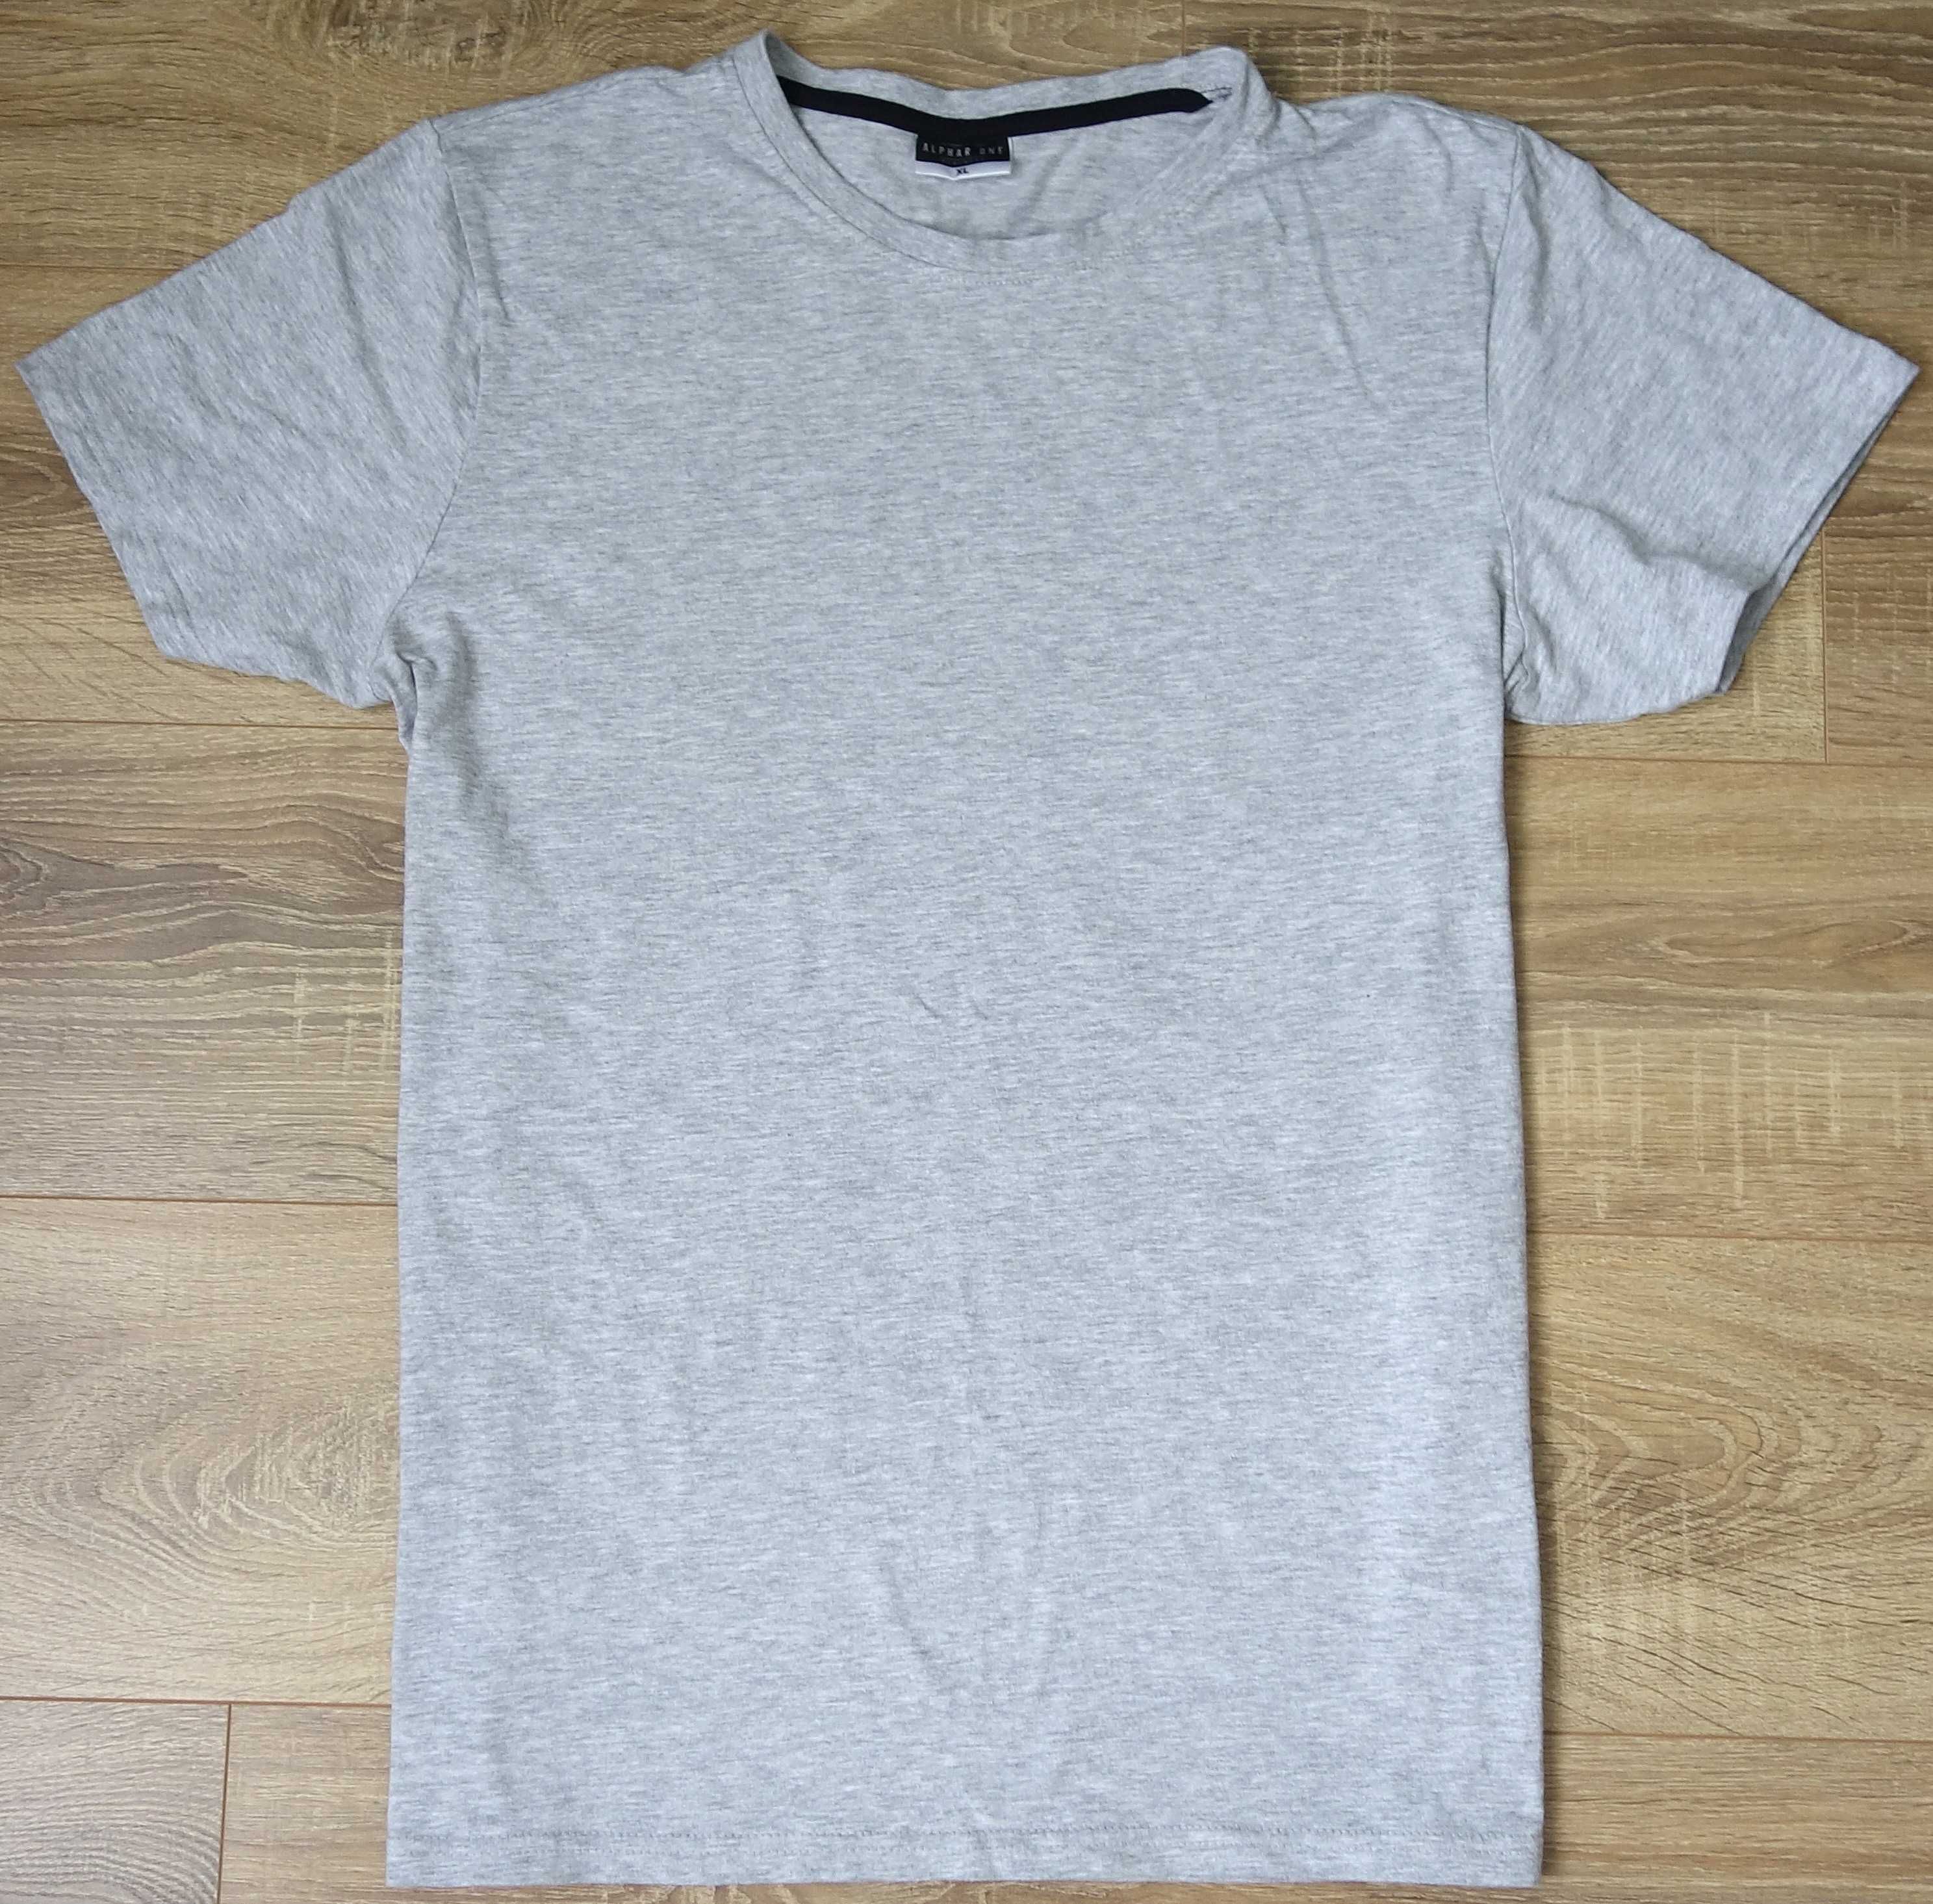 T-shirt koszulka męska L/XL szara